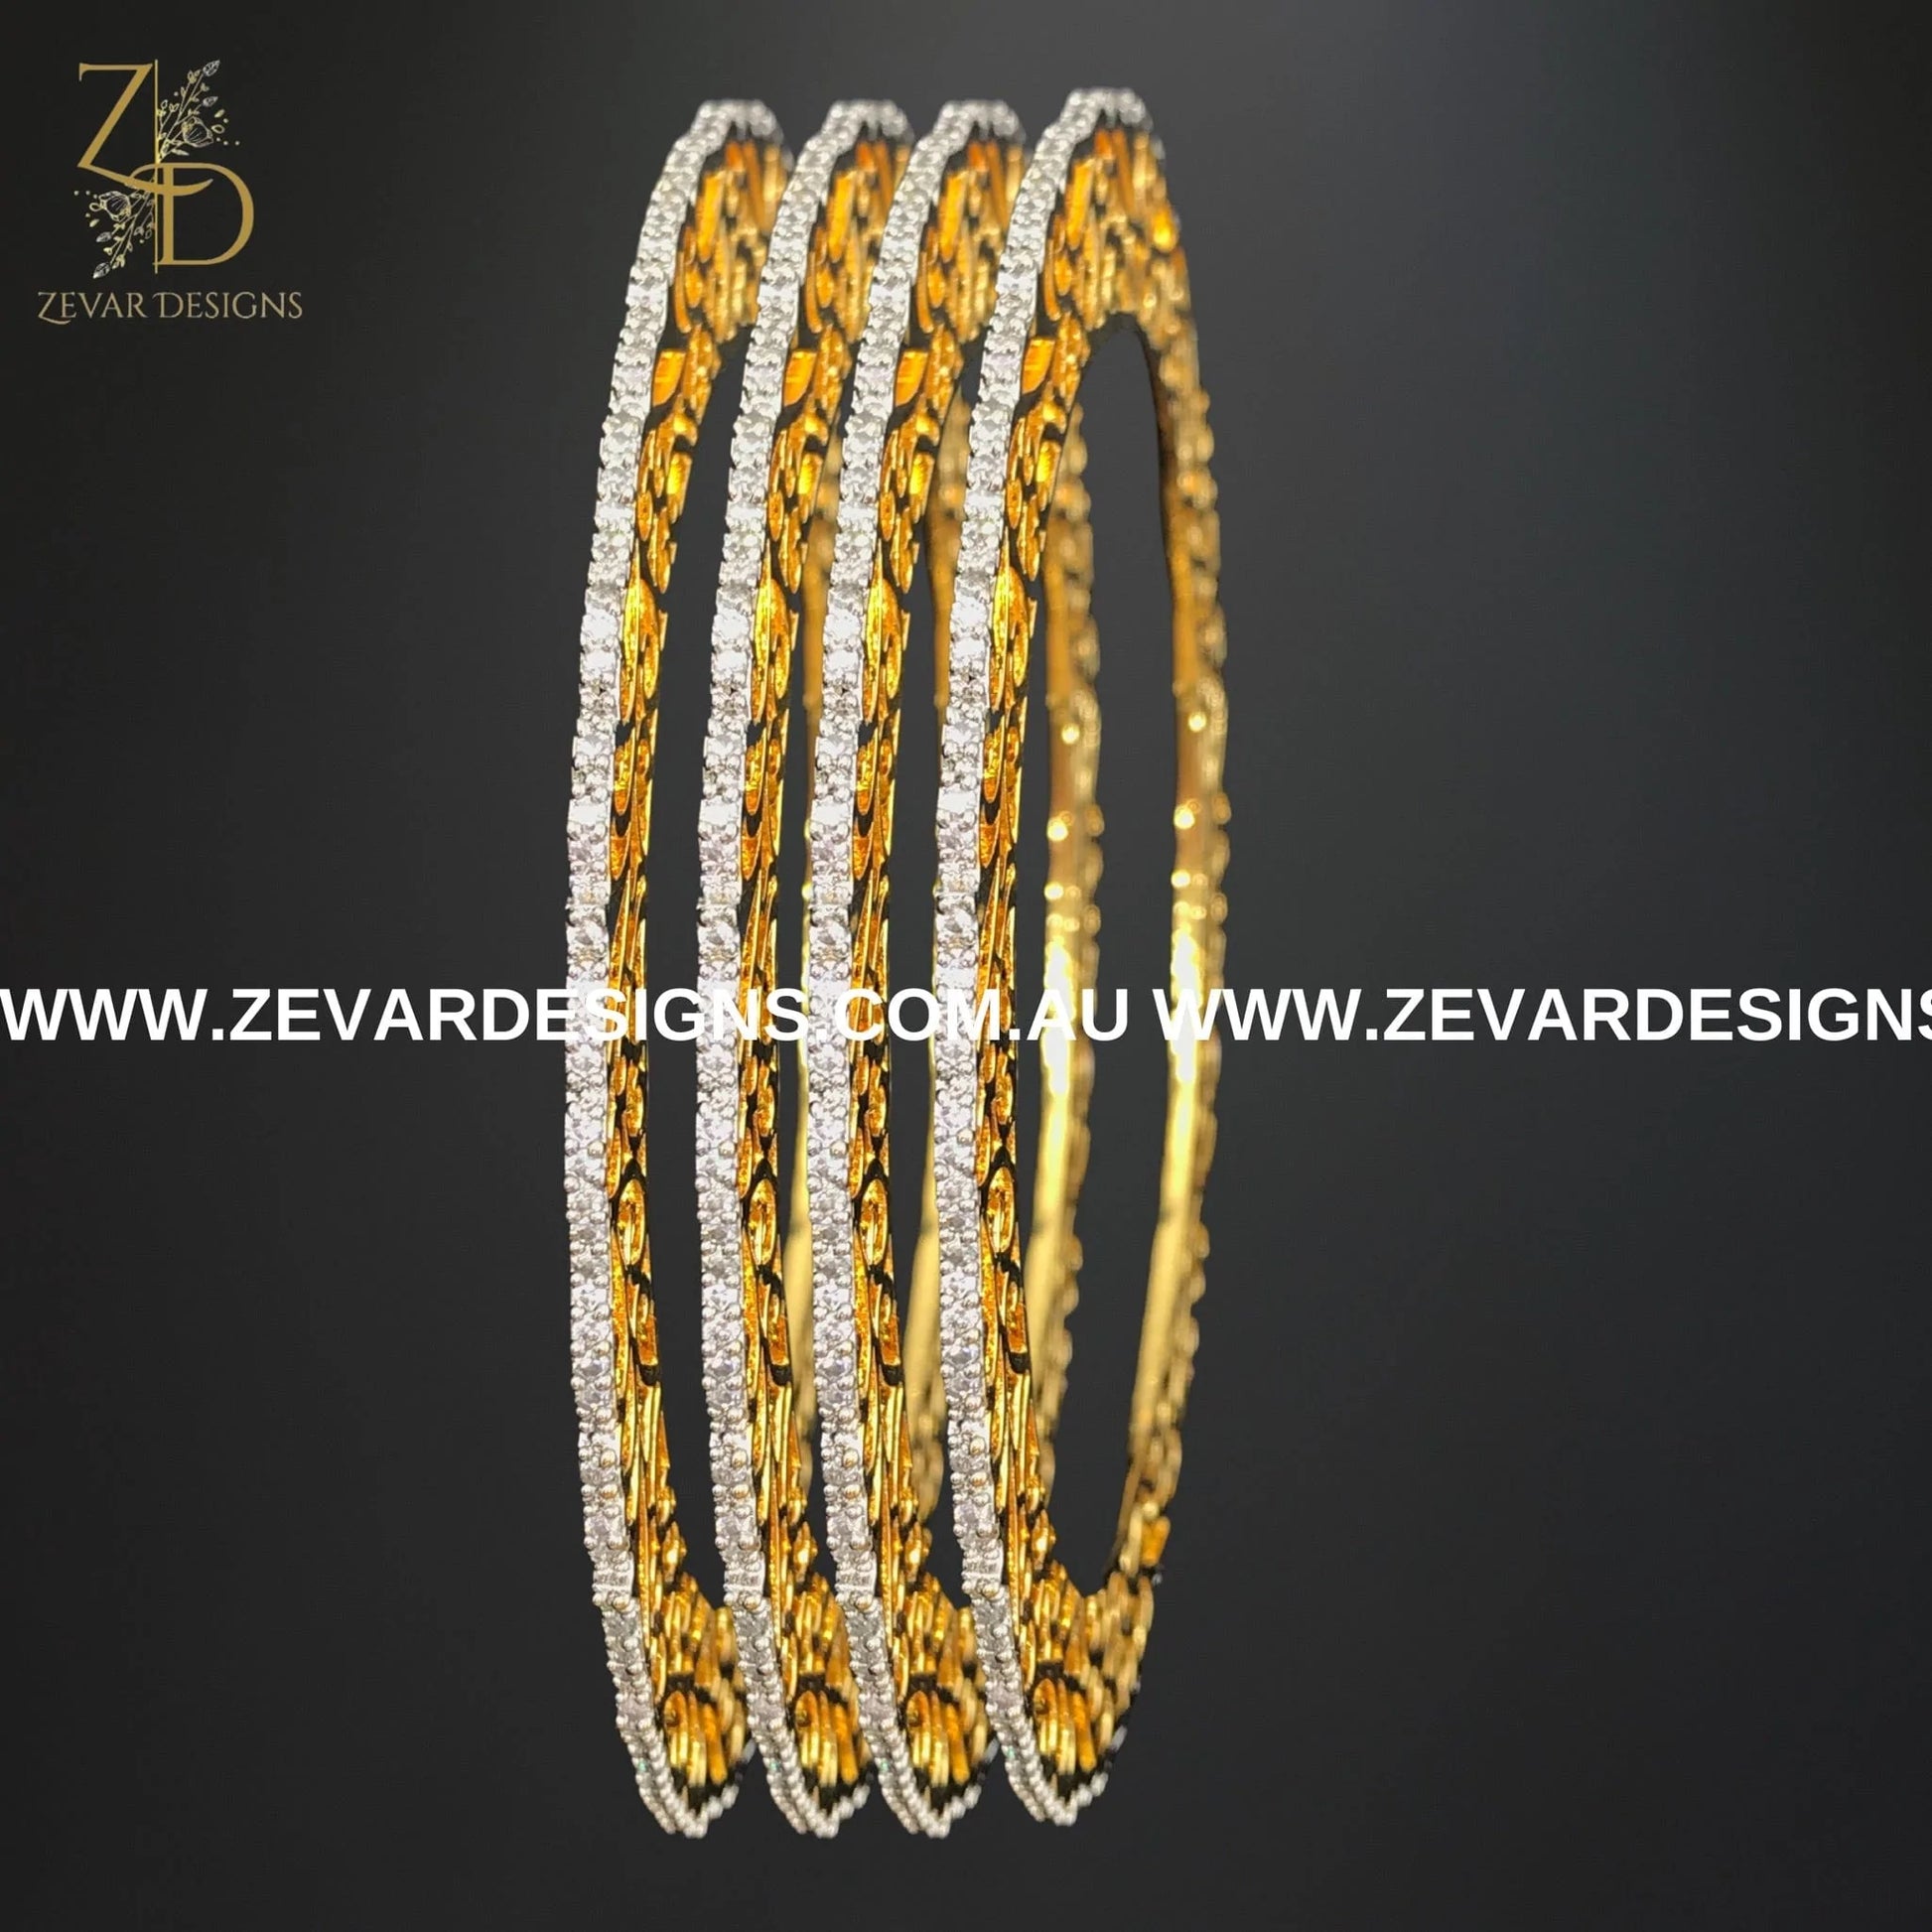 Zevar Designs Bangles & Bracelets - AD AD Single Line Bangles with Broad Gold Rim